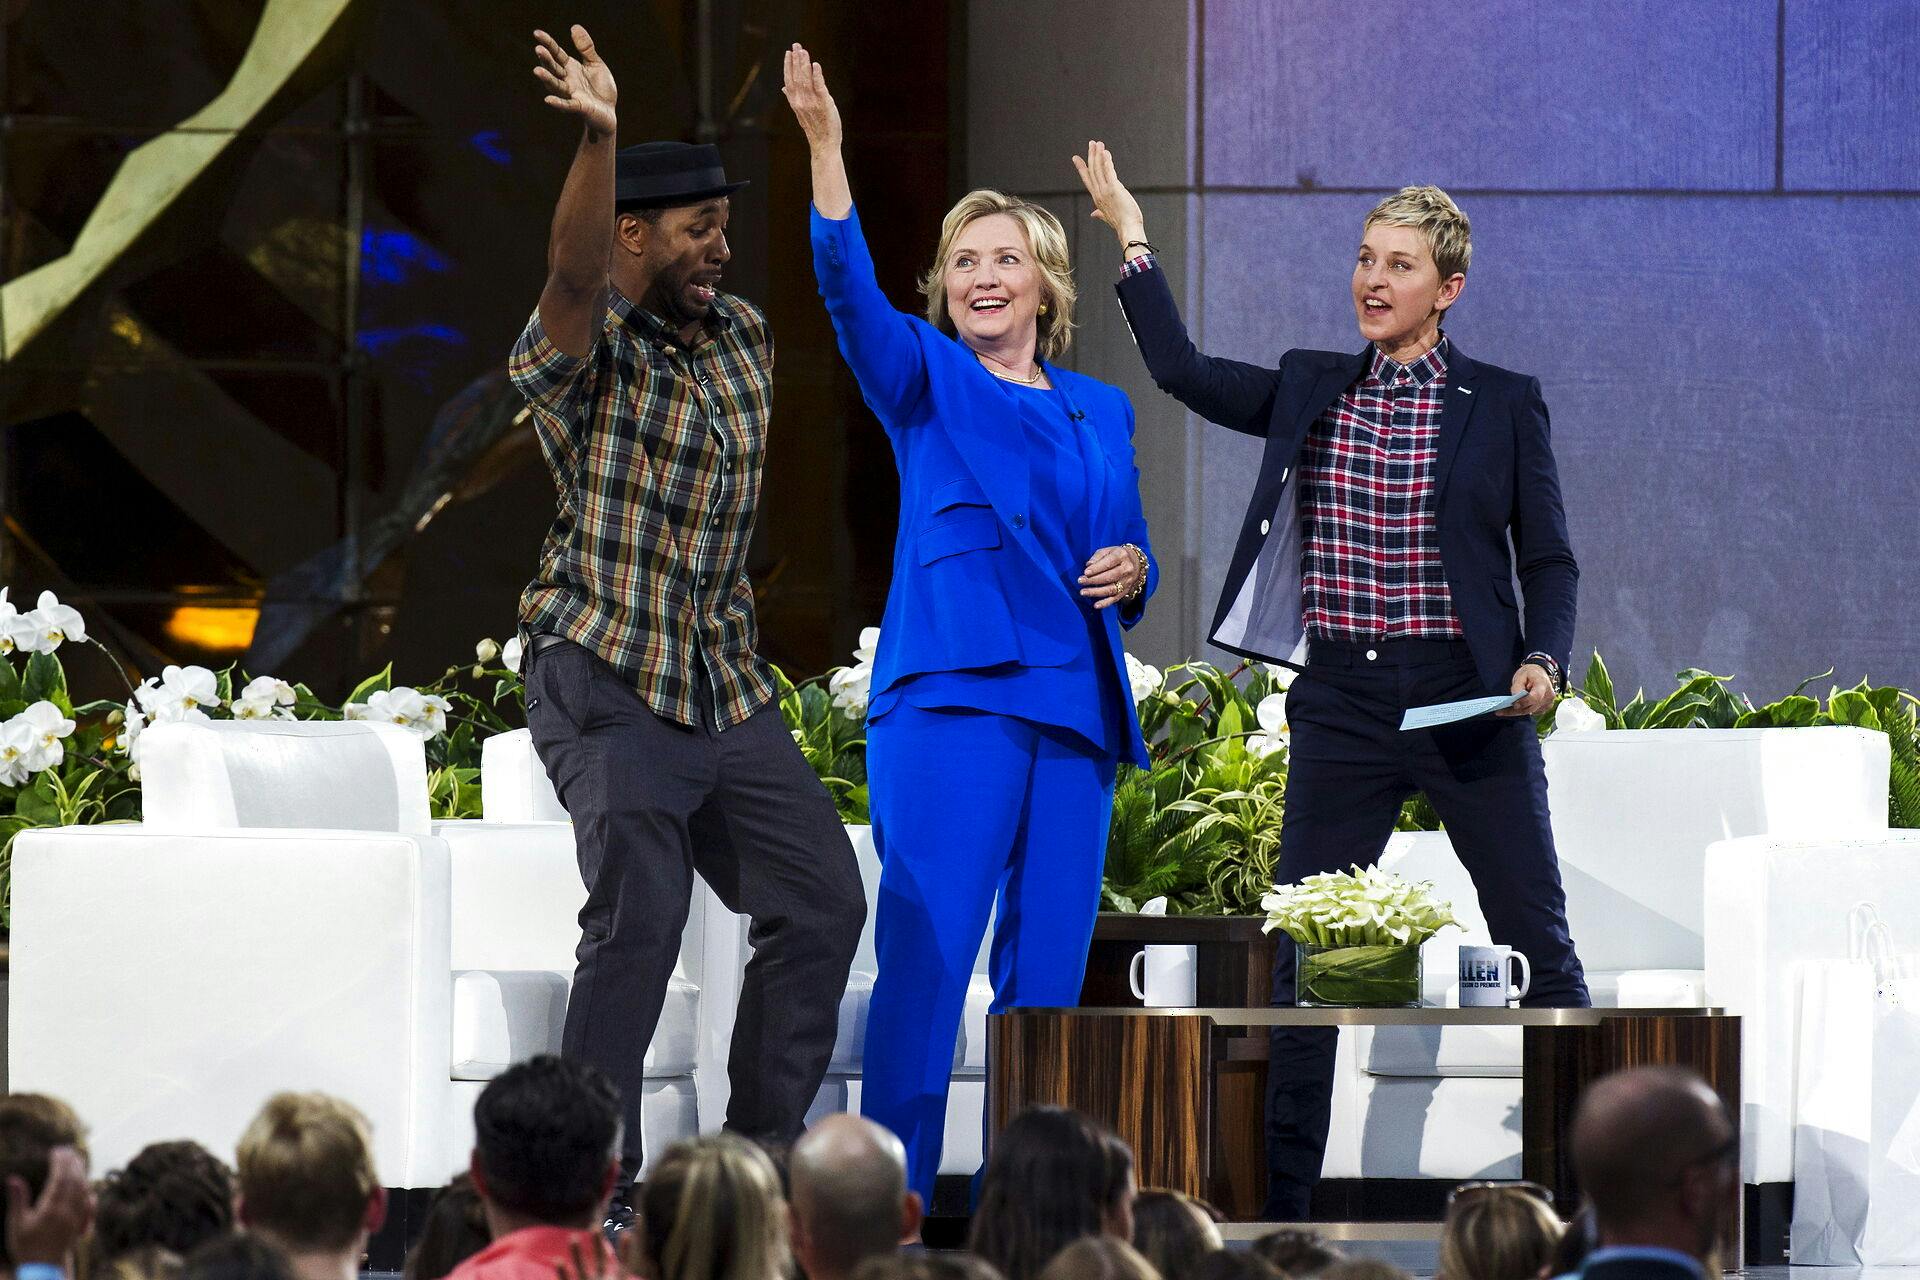 Der var altid gak i gaden, når de Ellen DeGeneres og "Twitch" slog sig løs.&nbsp;
